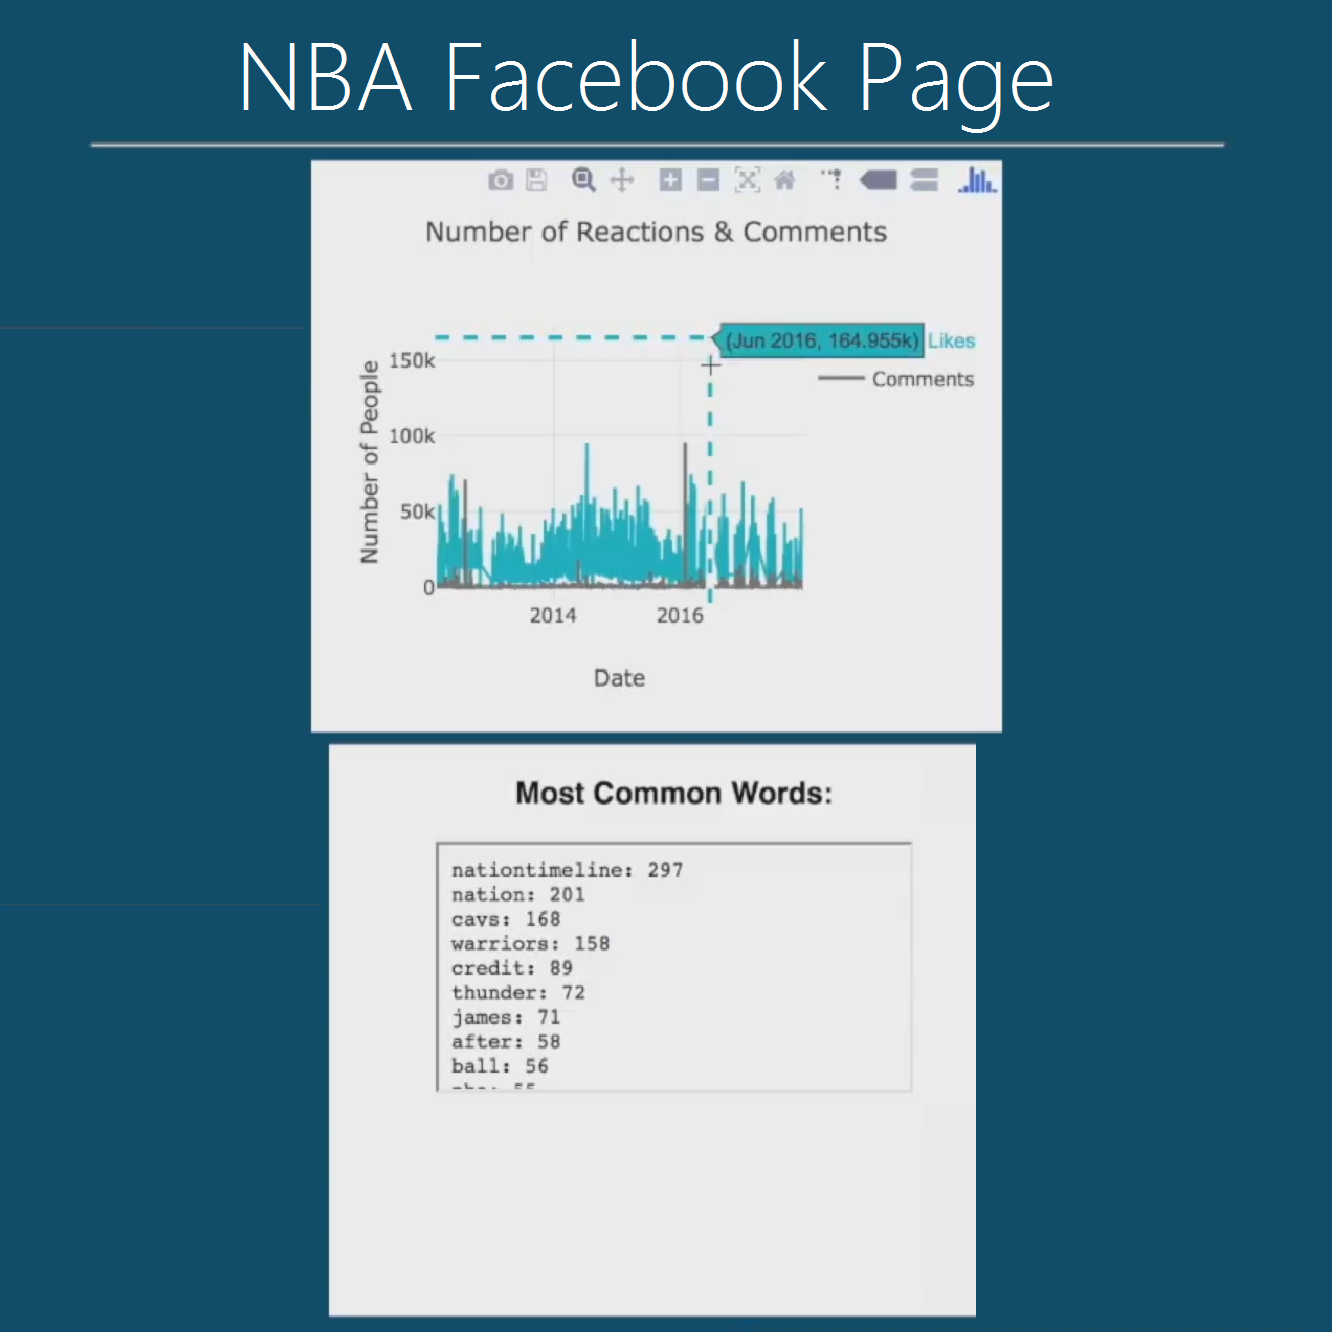 Facebook Page Data Gathering & Analysis